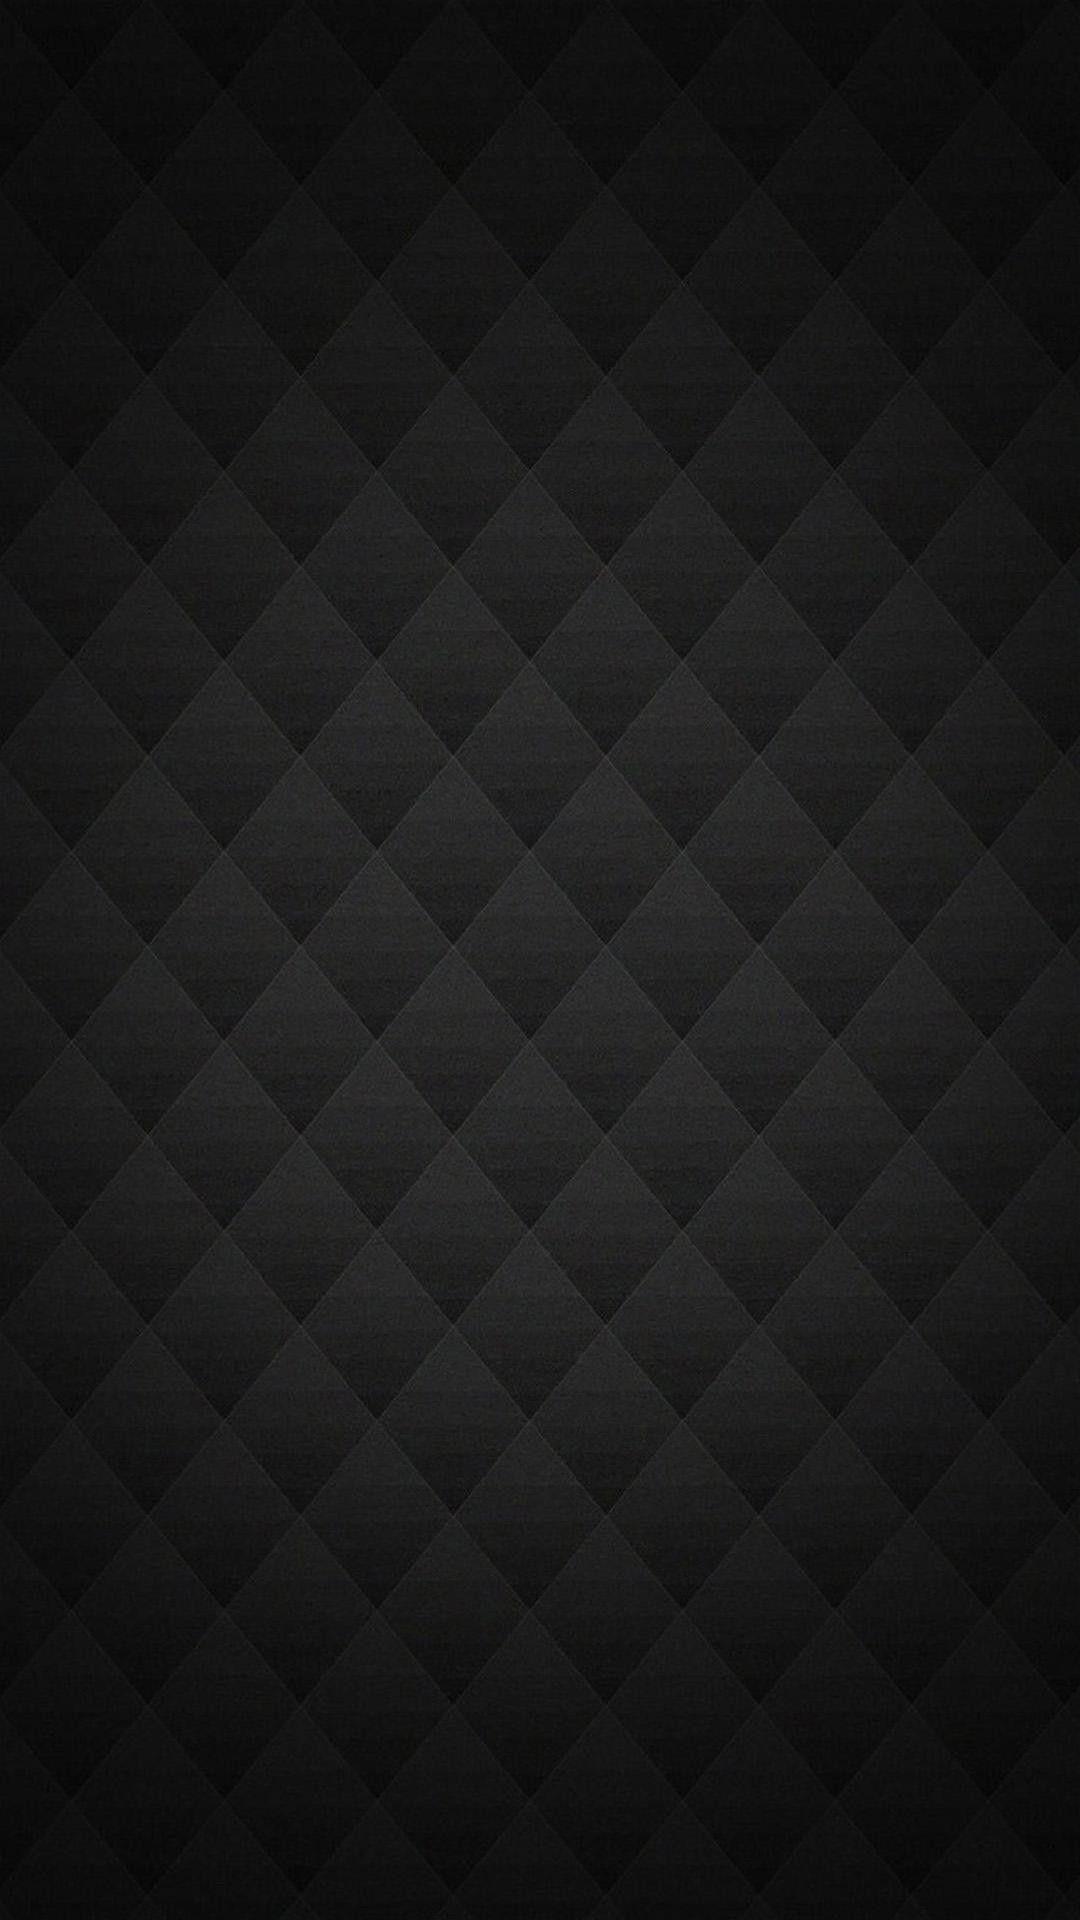 IPhone 6 Carbon Fiber Wallpaper